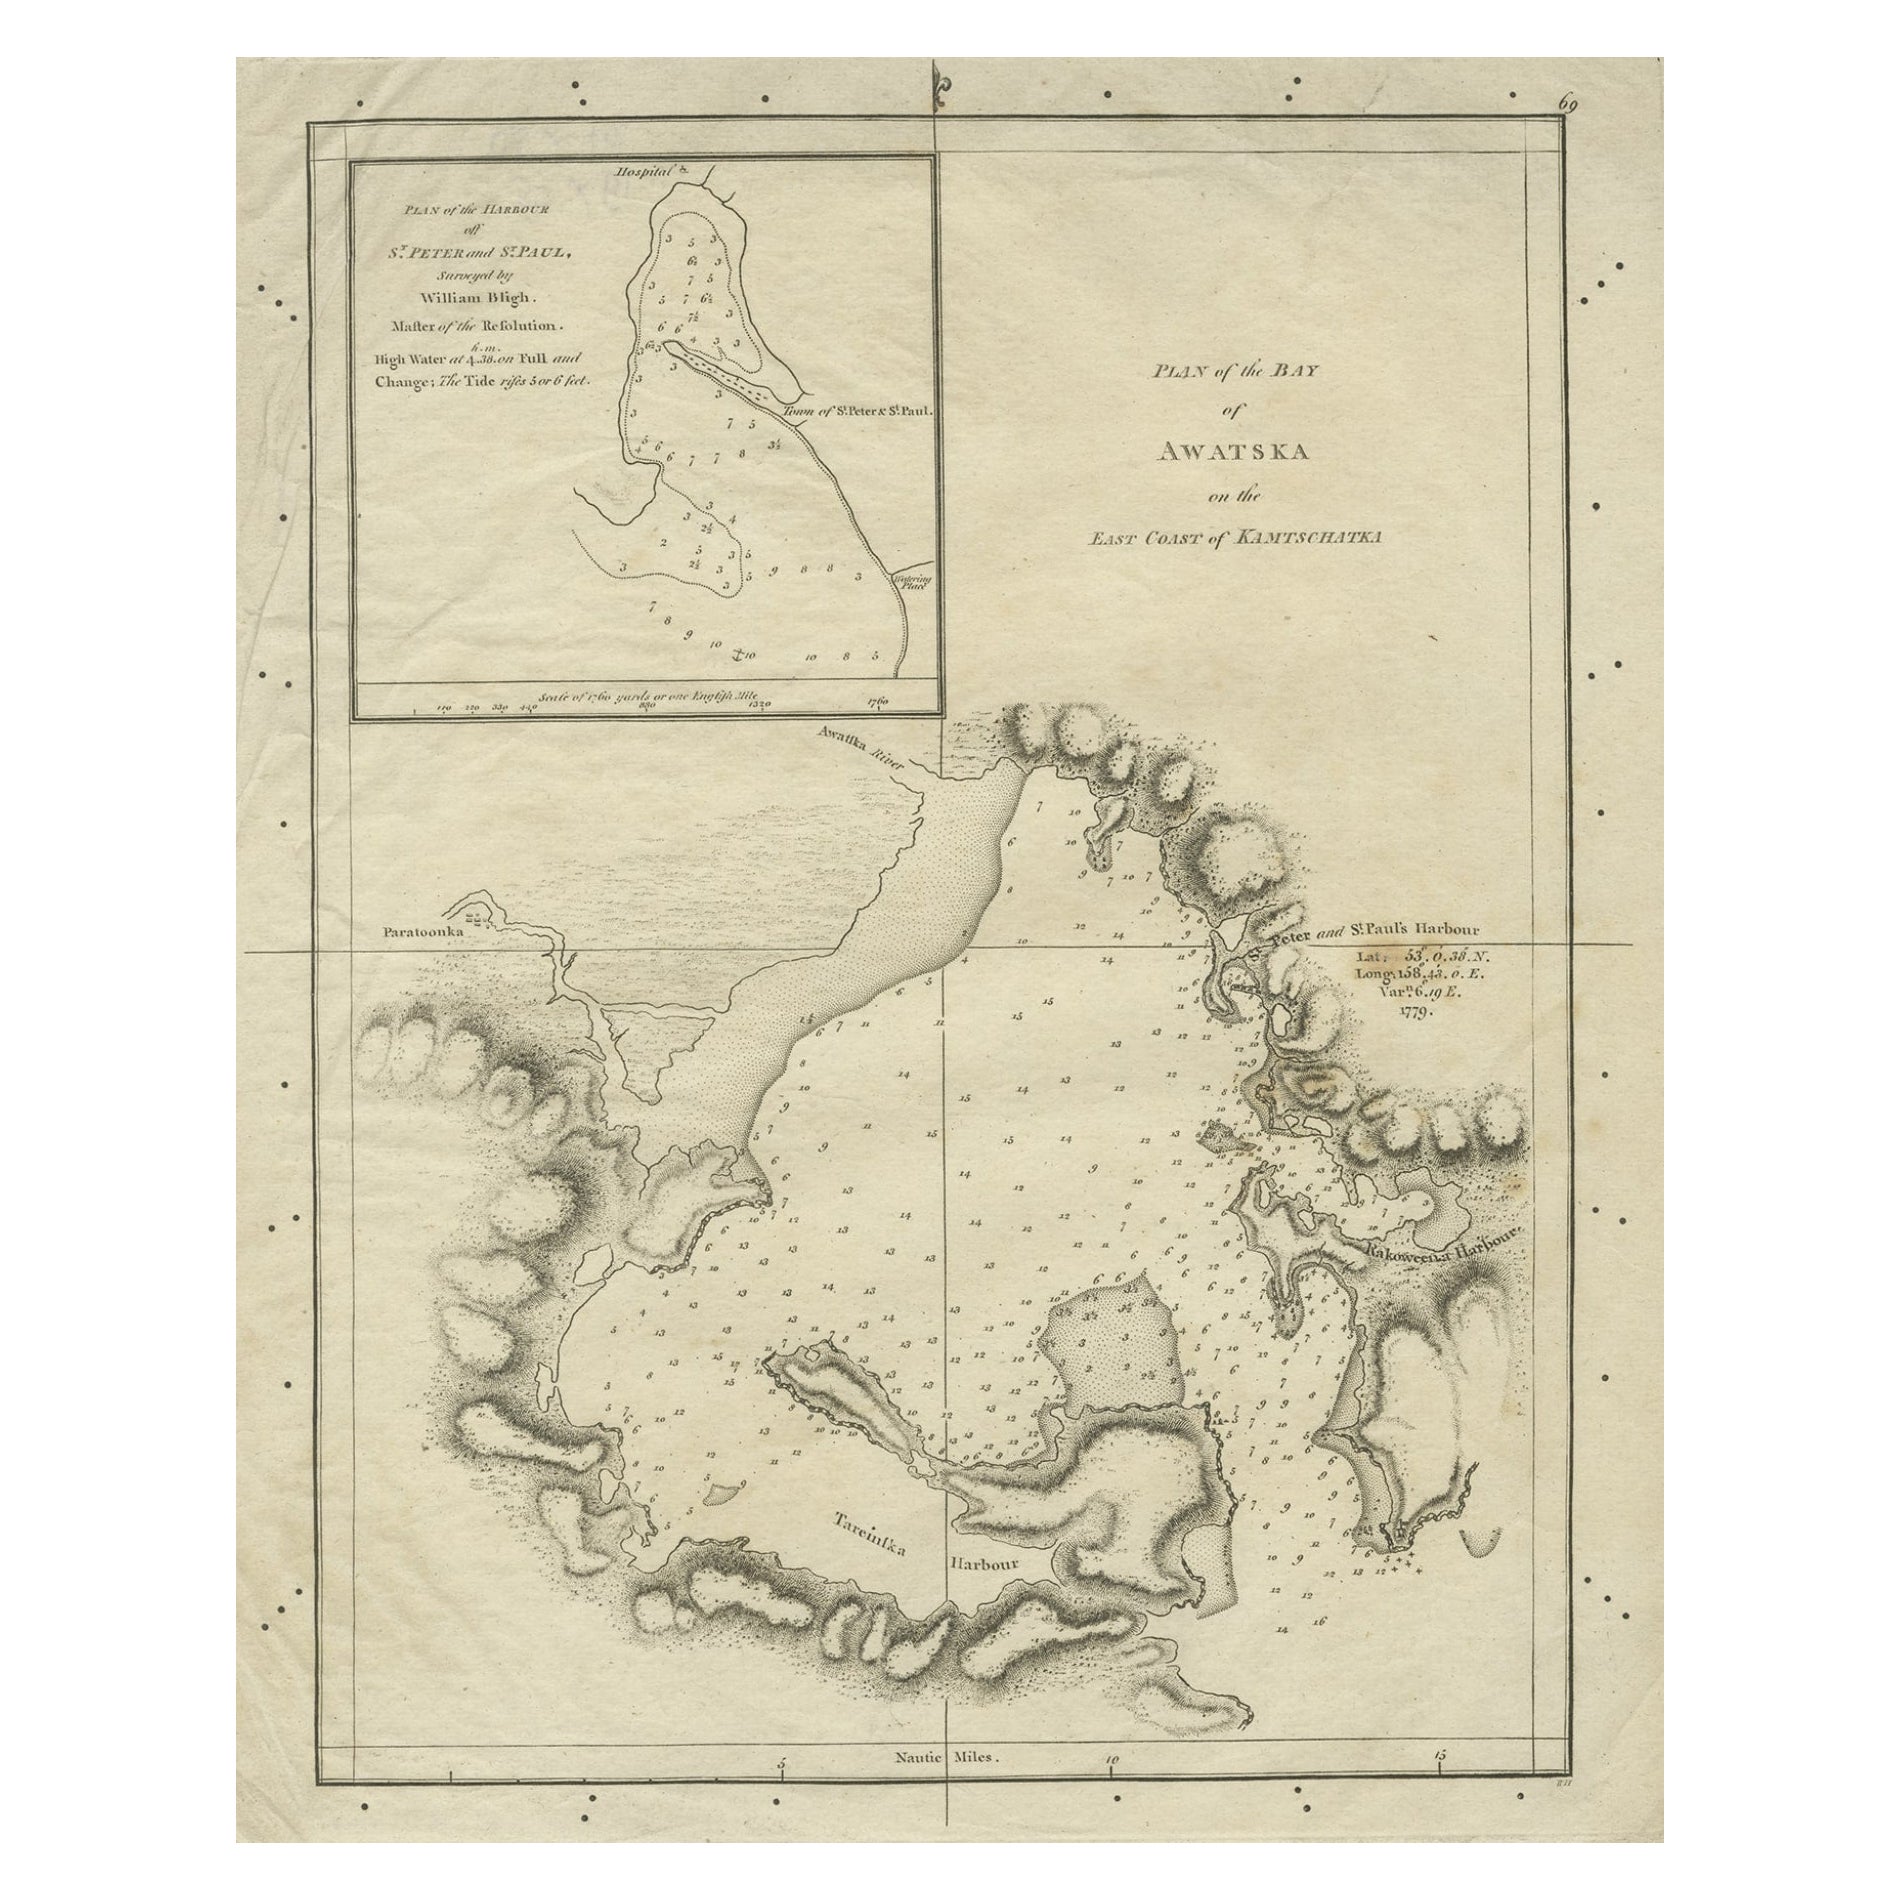 Ancienne carte de la baie d'Awatska sur la côte de la péninsule de Kamchatka, Russie, par Cook, 1784